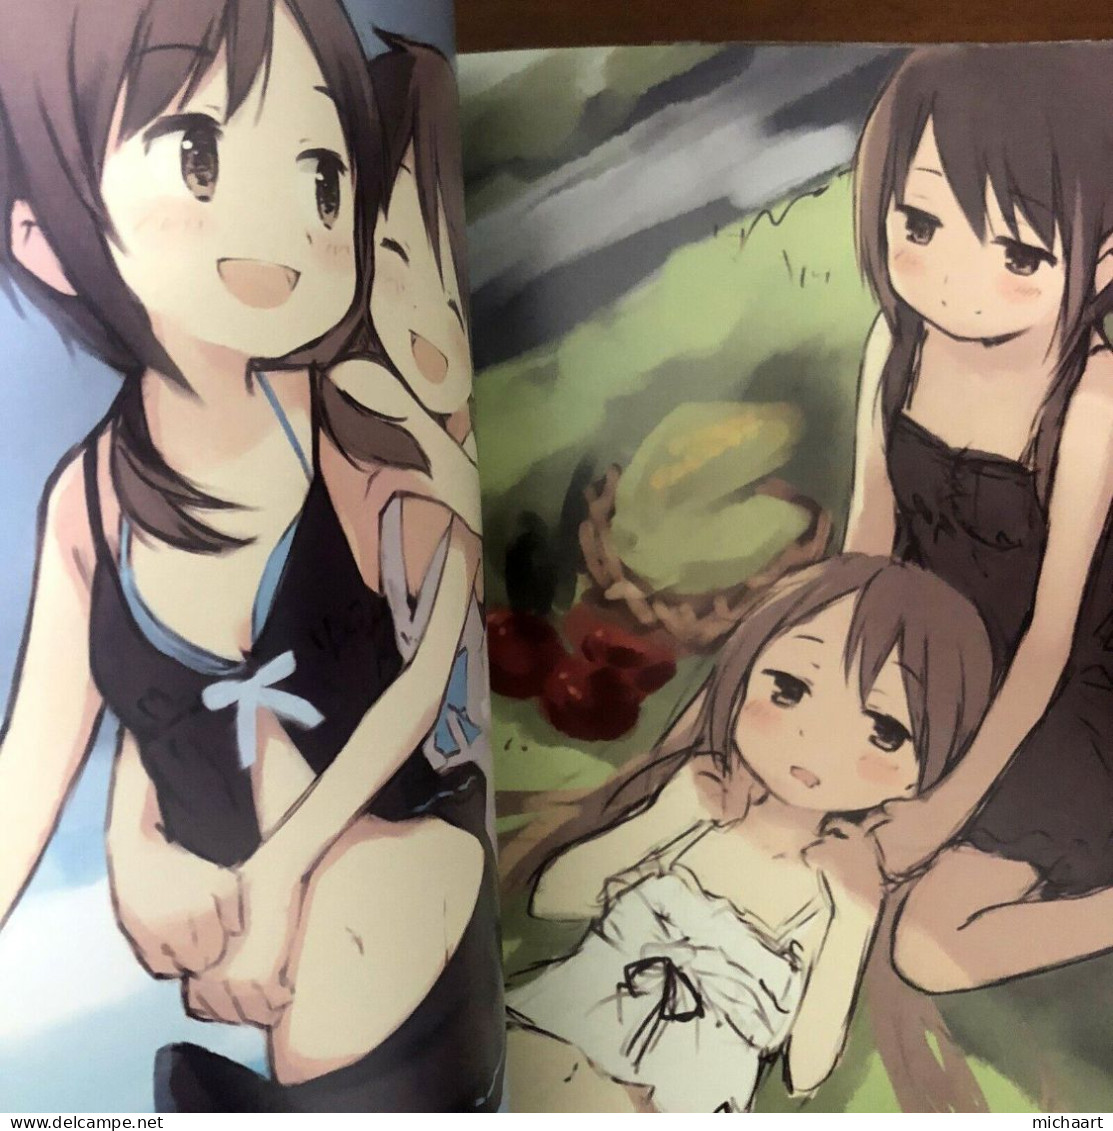 Doujinshi Girls Log Vol. 7 Lakeside Holiday Kyuri Art Book Japan Manga 03032